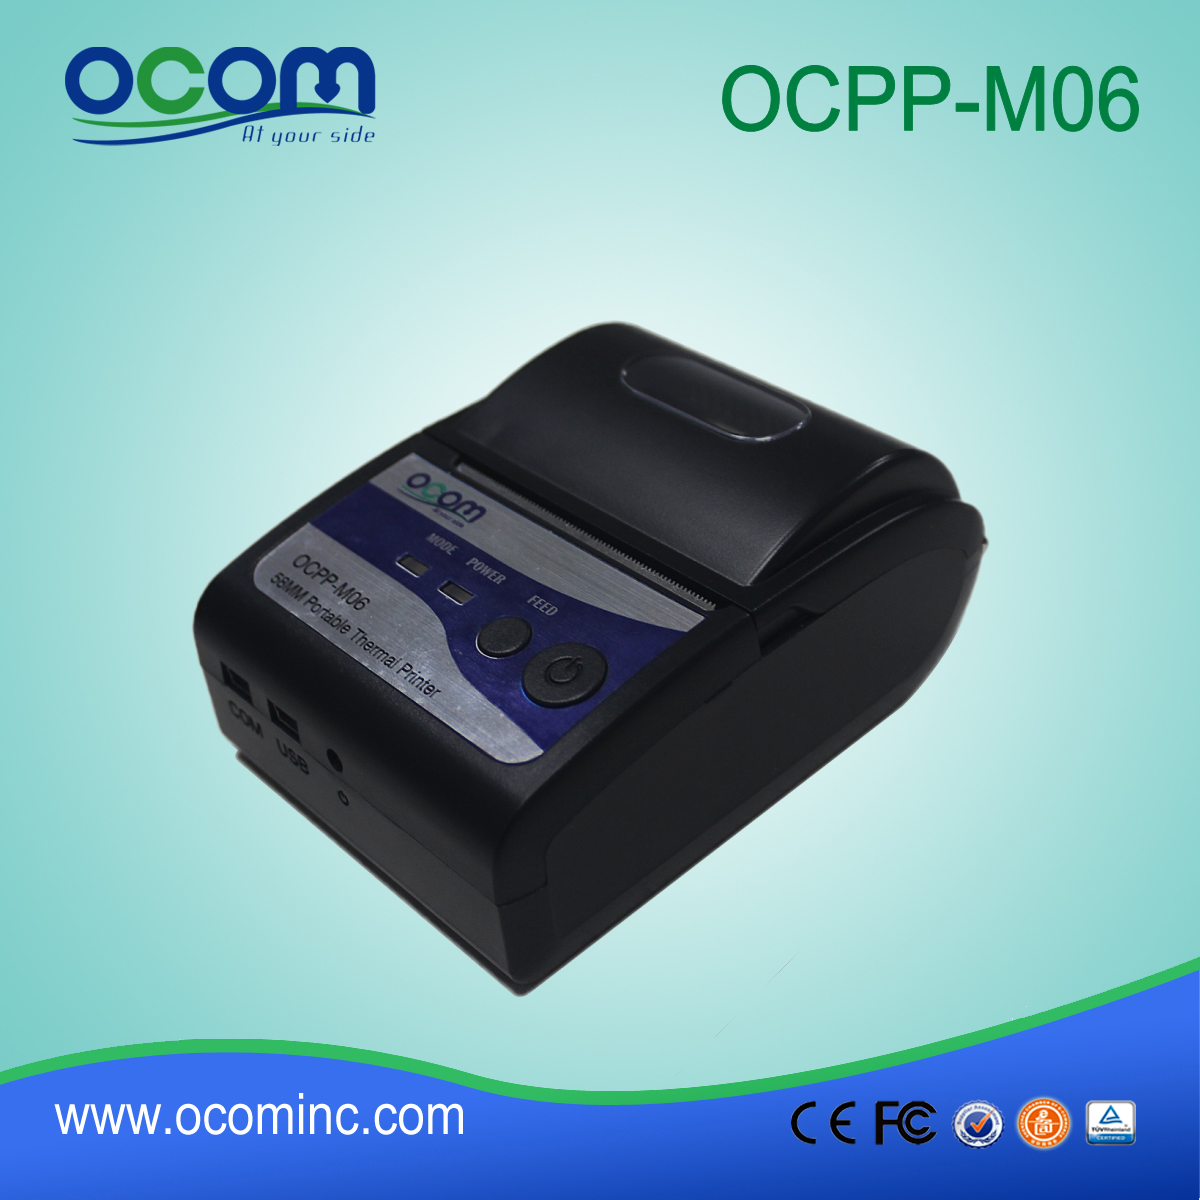 OCPP-M06: الصين مصنع 58mm وطابعة بلوتوث، ونقاط البيع طابعة بلوتوث